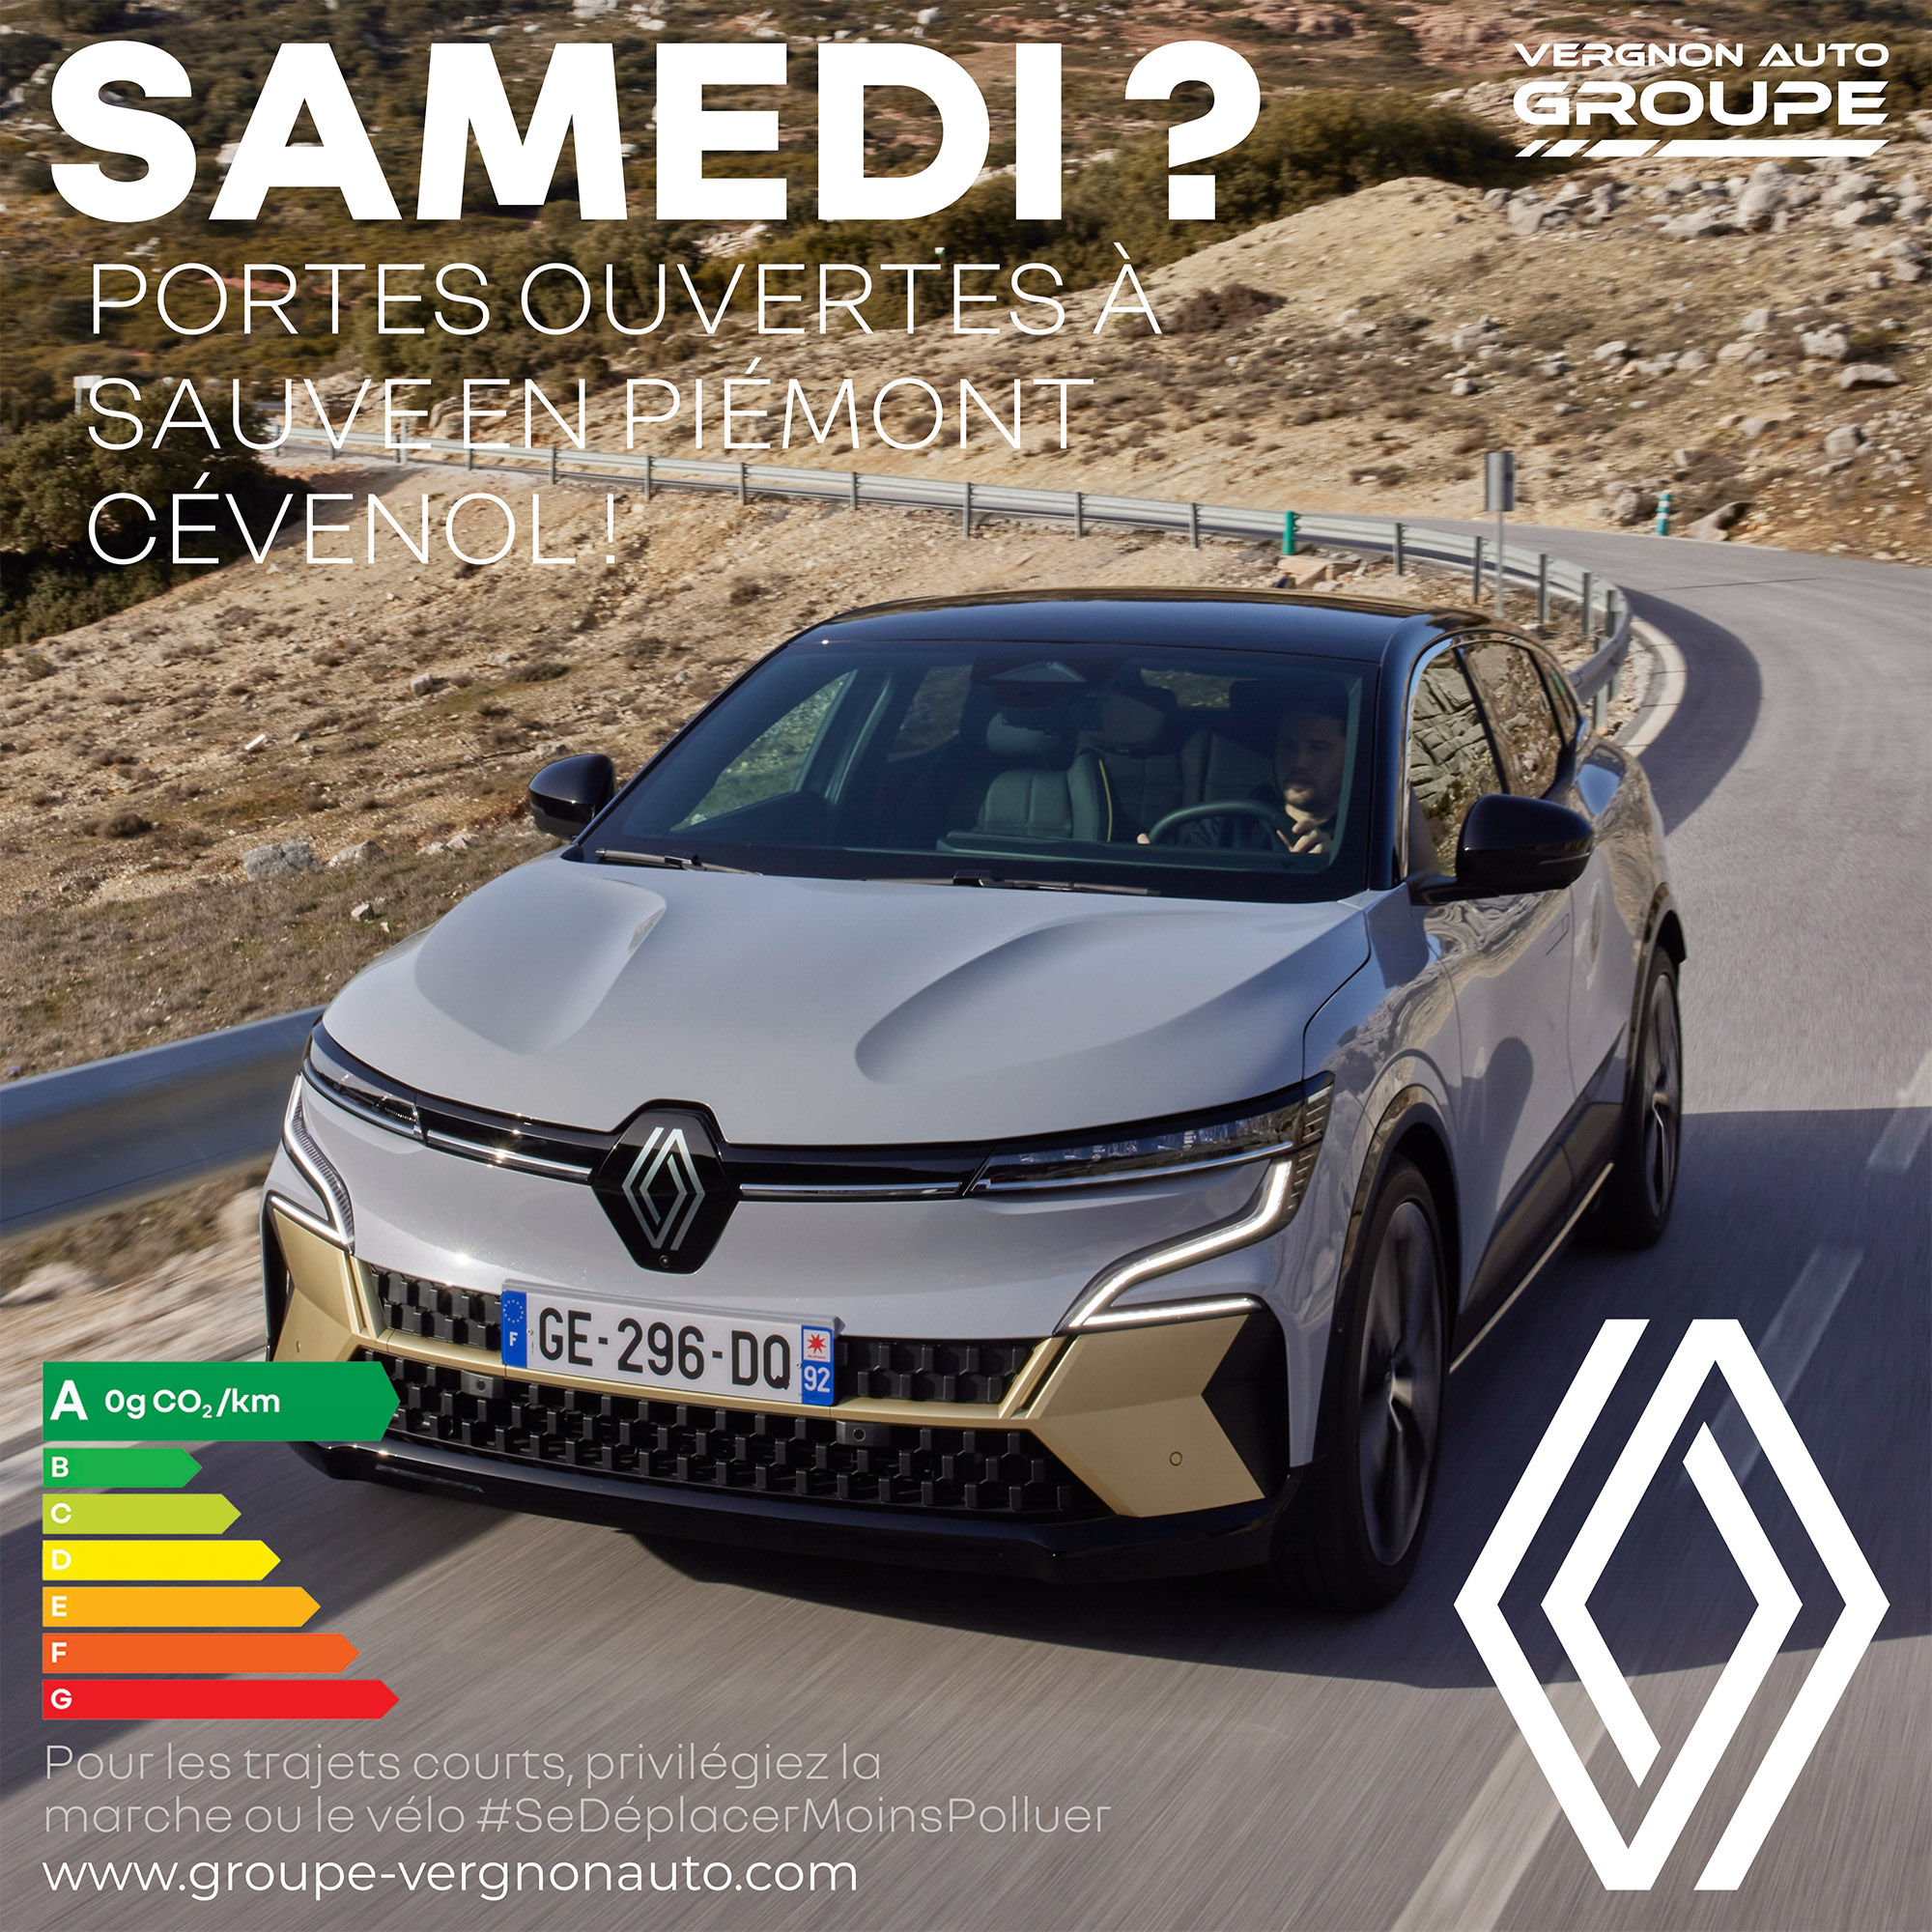 Le samedi 17 septembre, venez profiter à Sauve (Gard - 30) de nos portes ouvertes Renault !